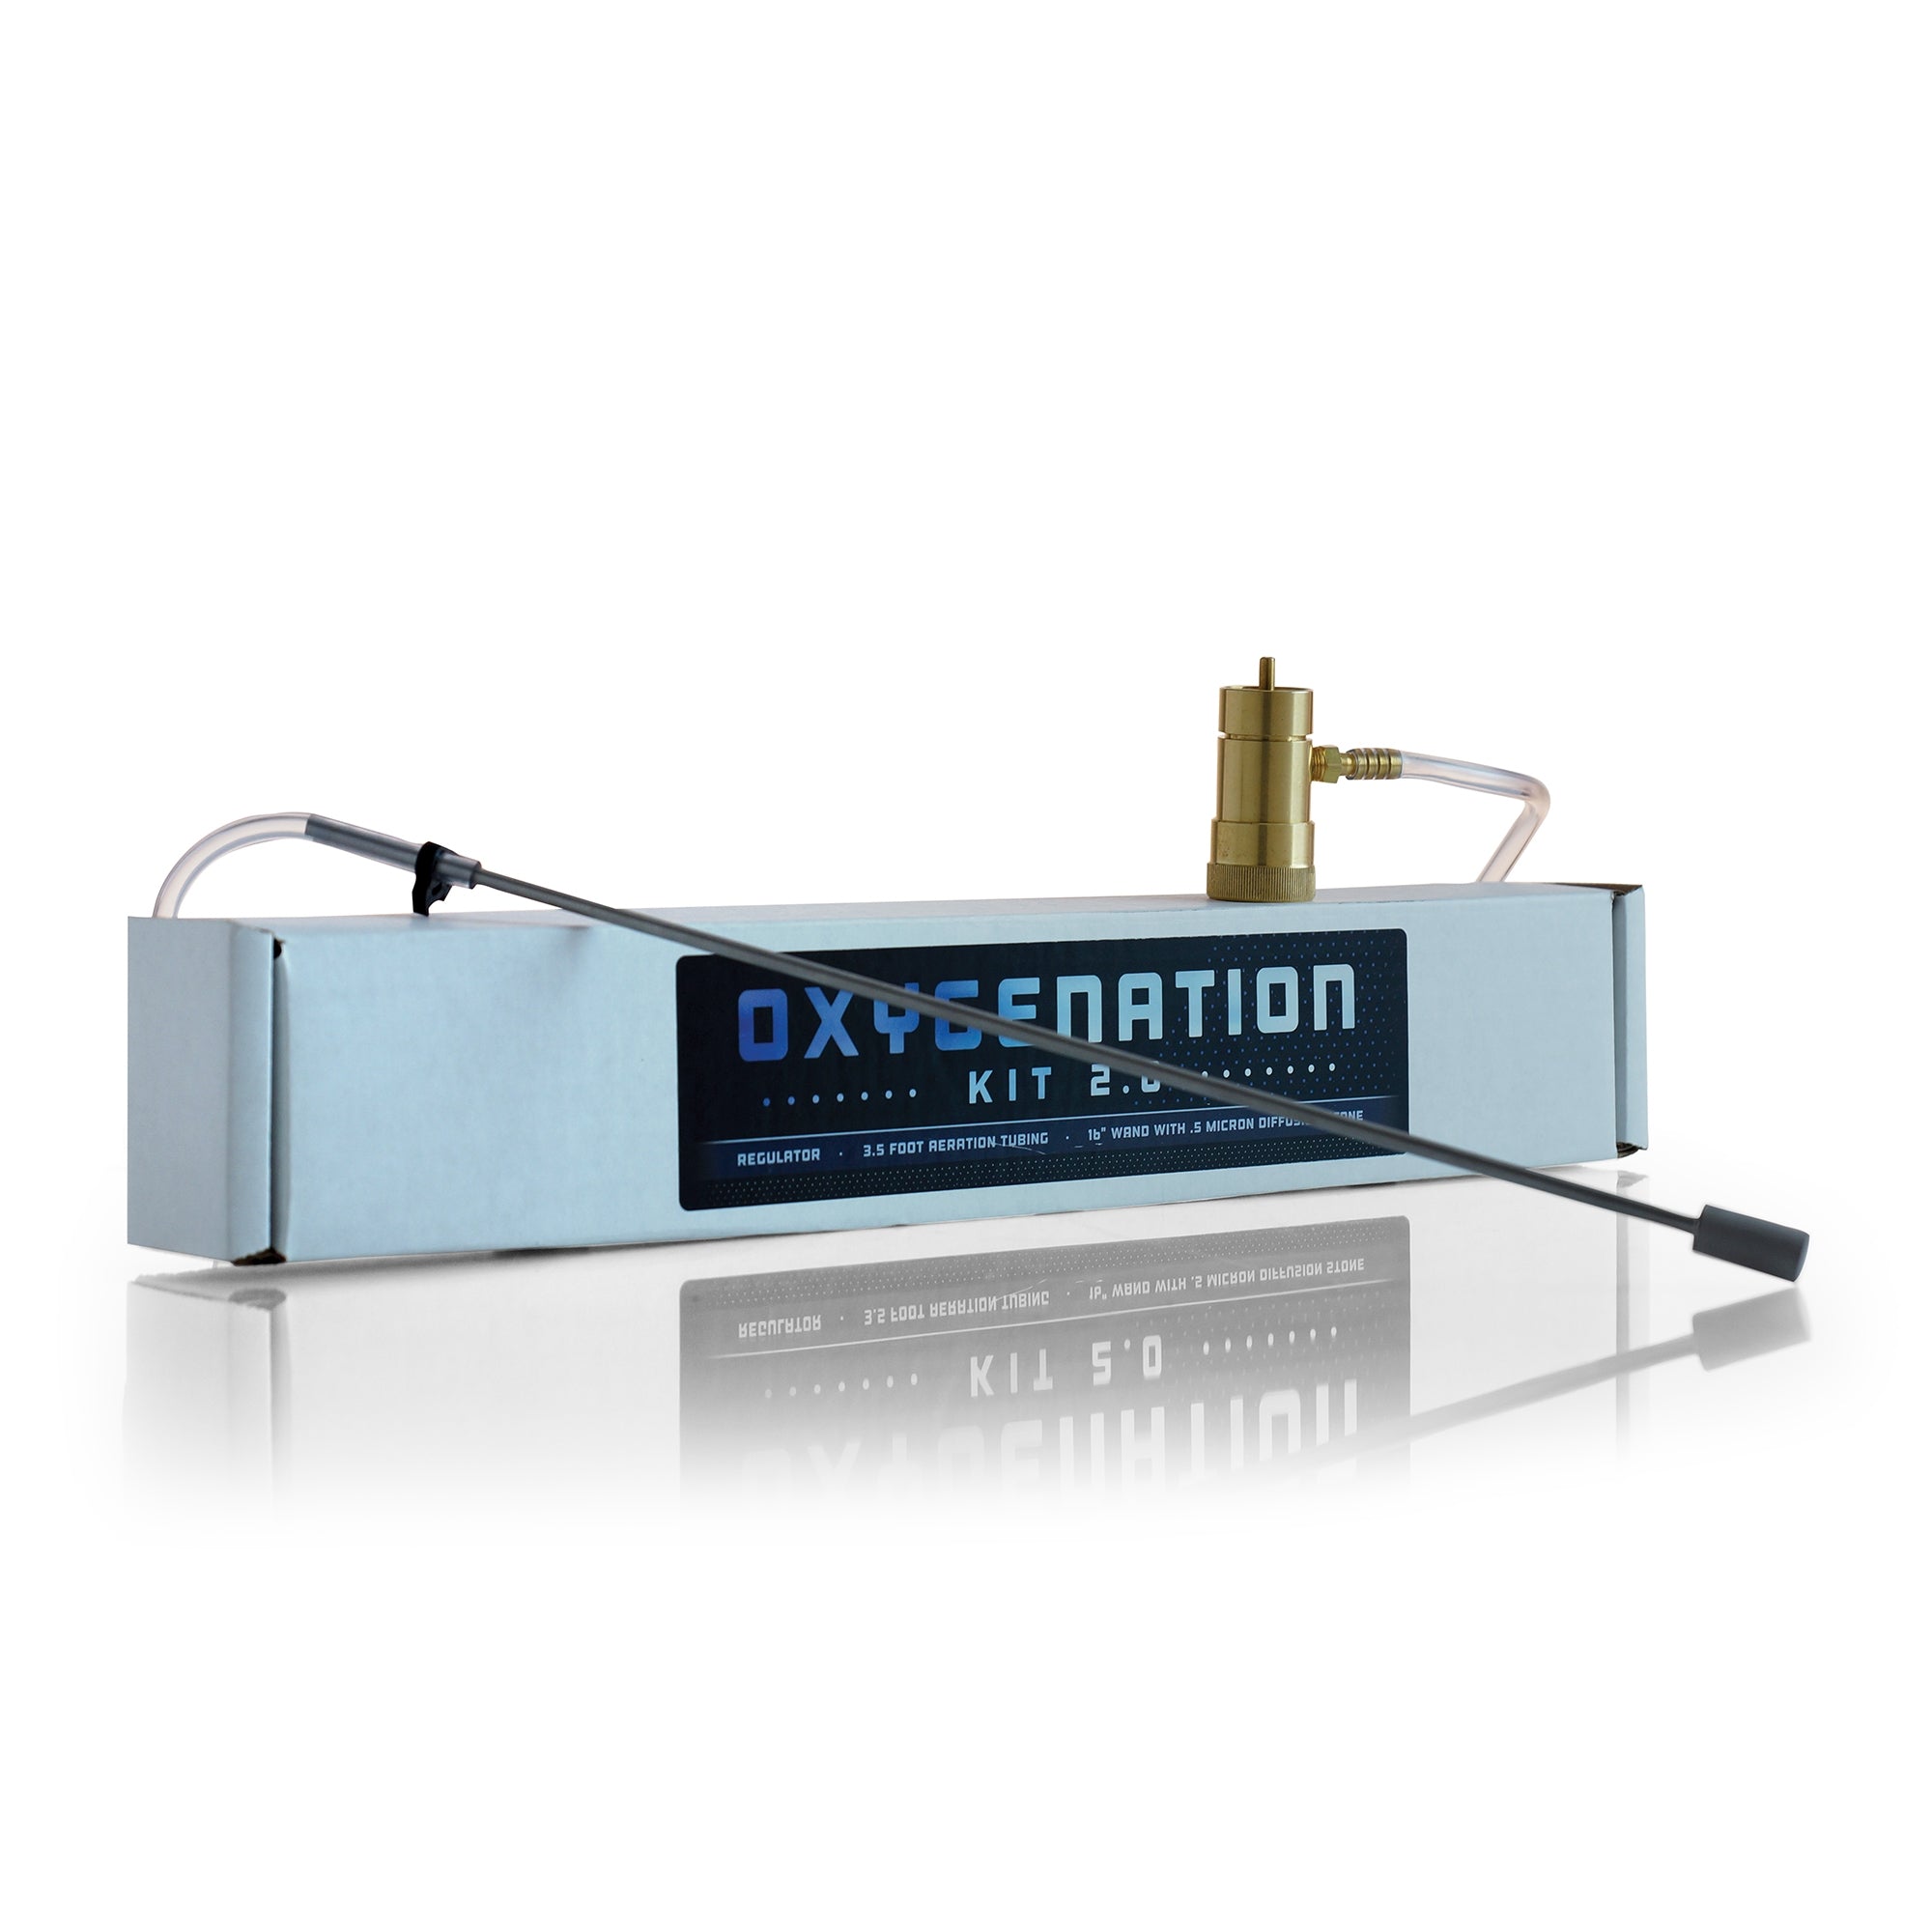 Image of Oxygenation Kit 2.0